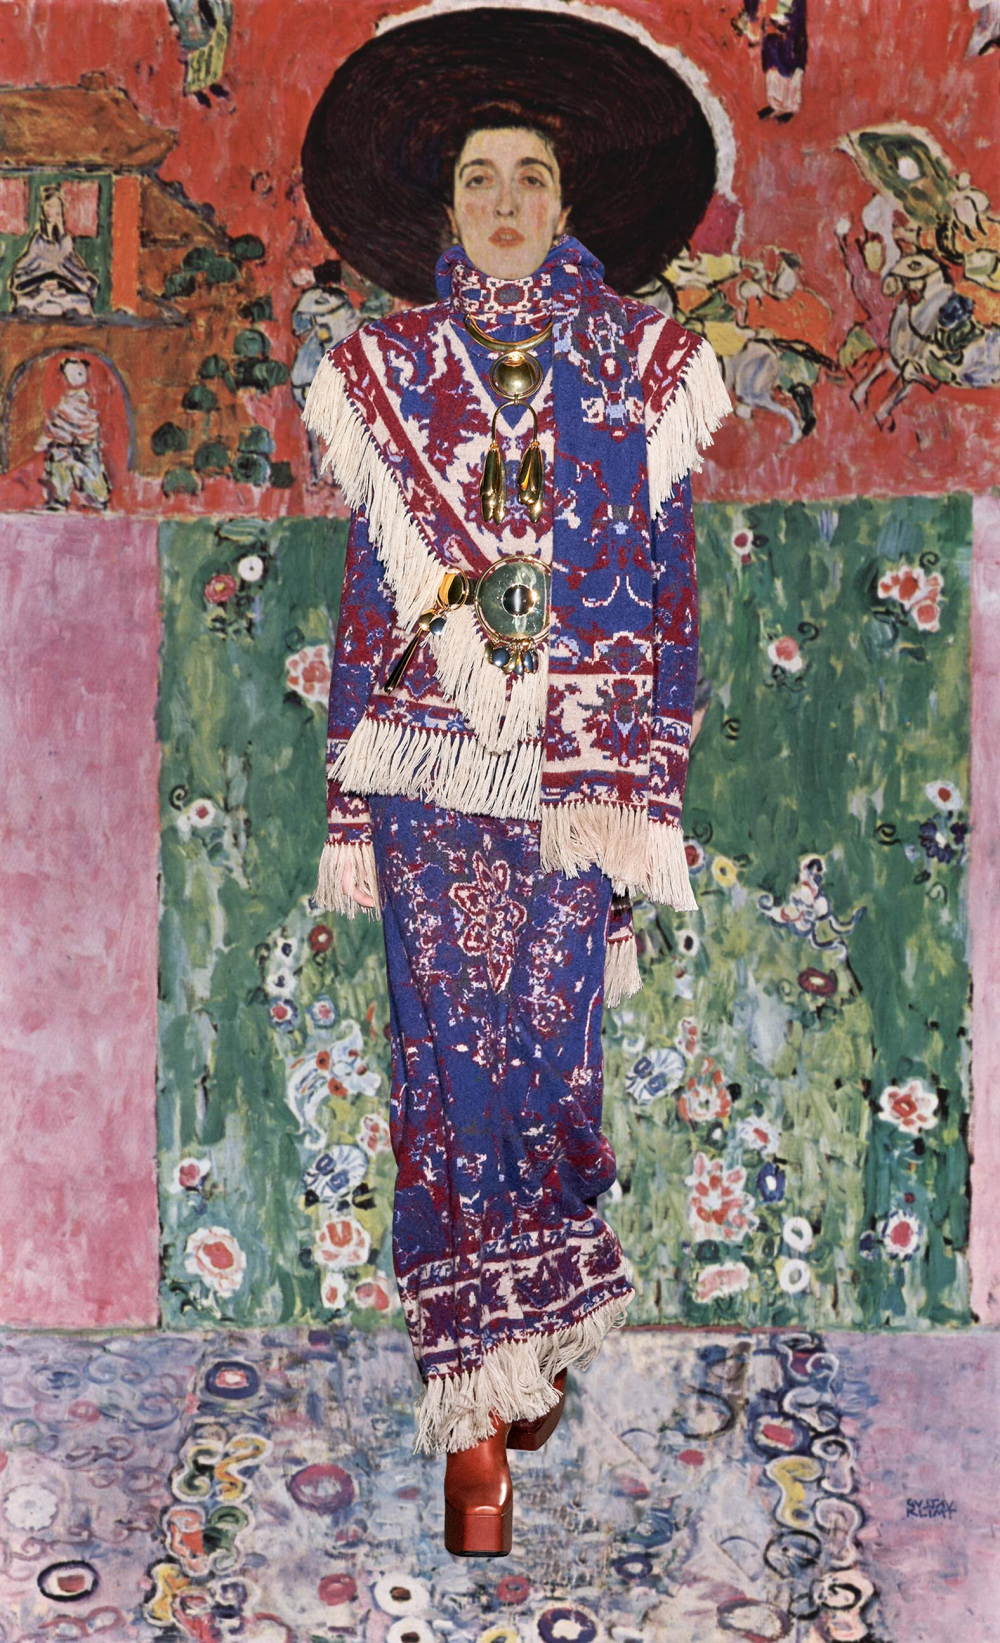  Gustav Klimt, Adele Bloch-Bauer II (in Paco Rabanne), 1912 